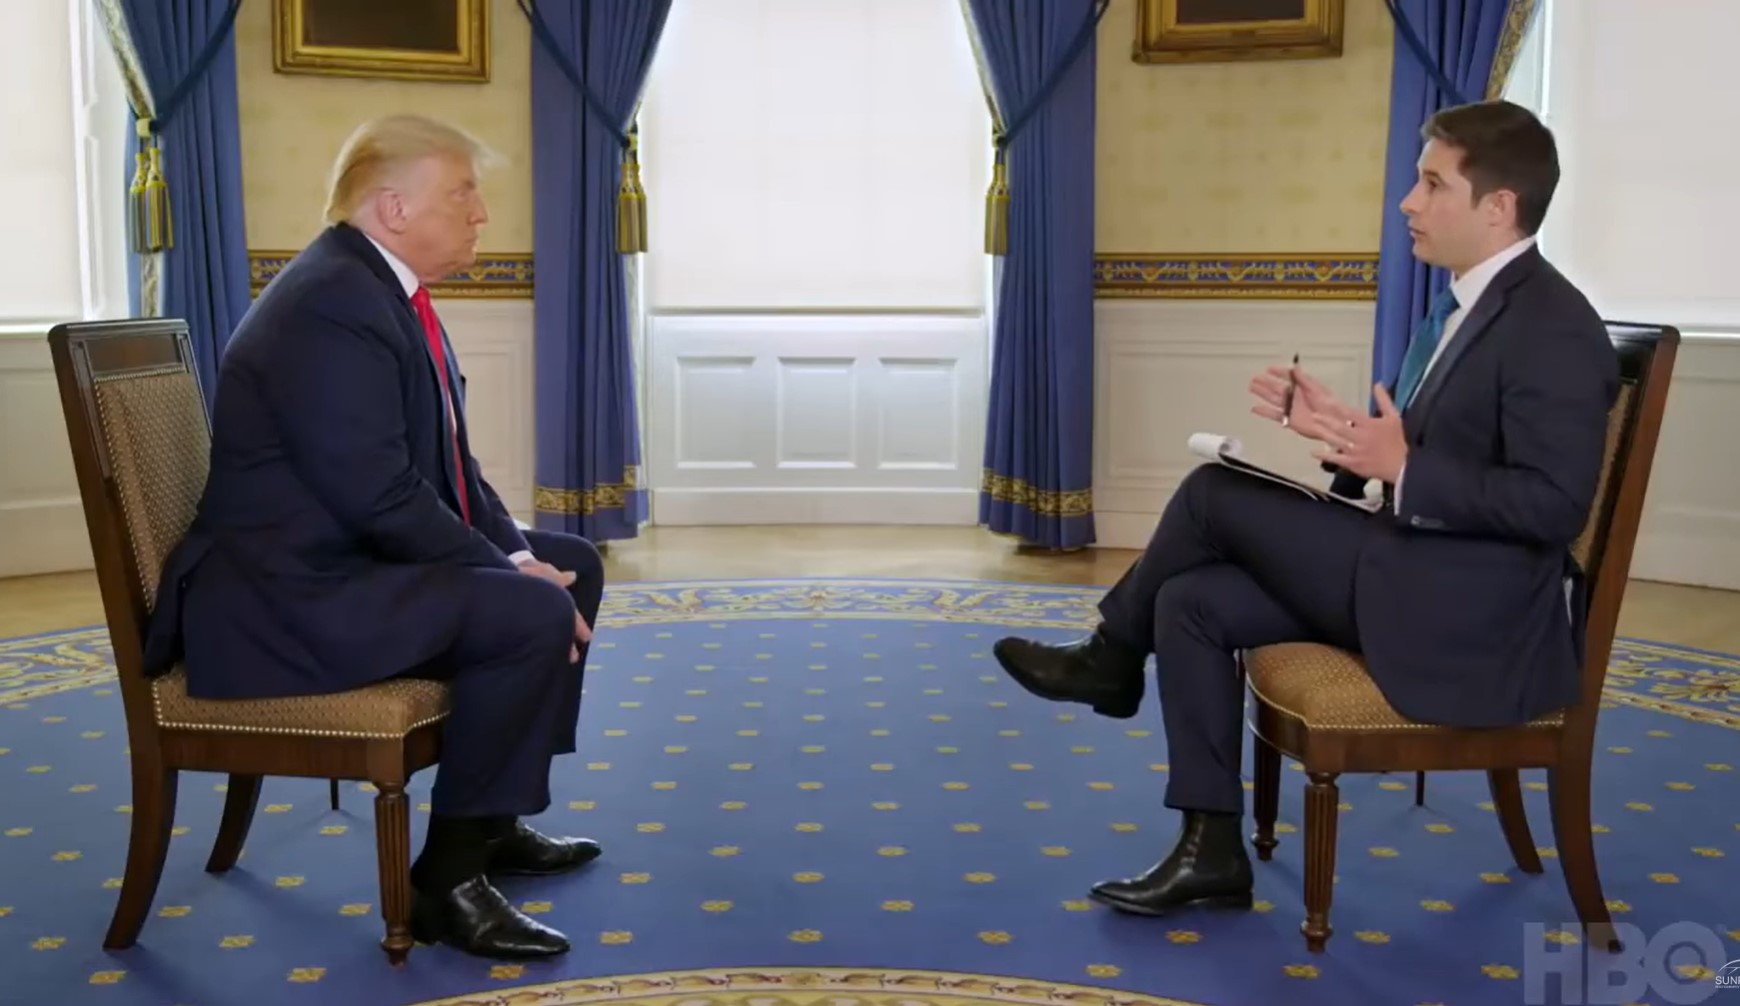 Ez a félórás interjú Trumppal már olyan, mintha a legjobb forgatókönyvírók írták volna